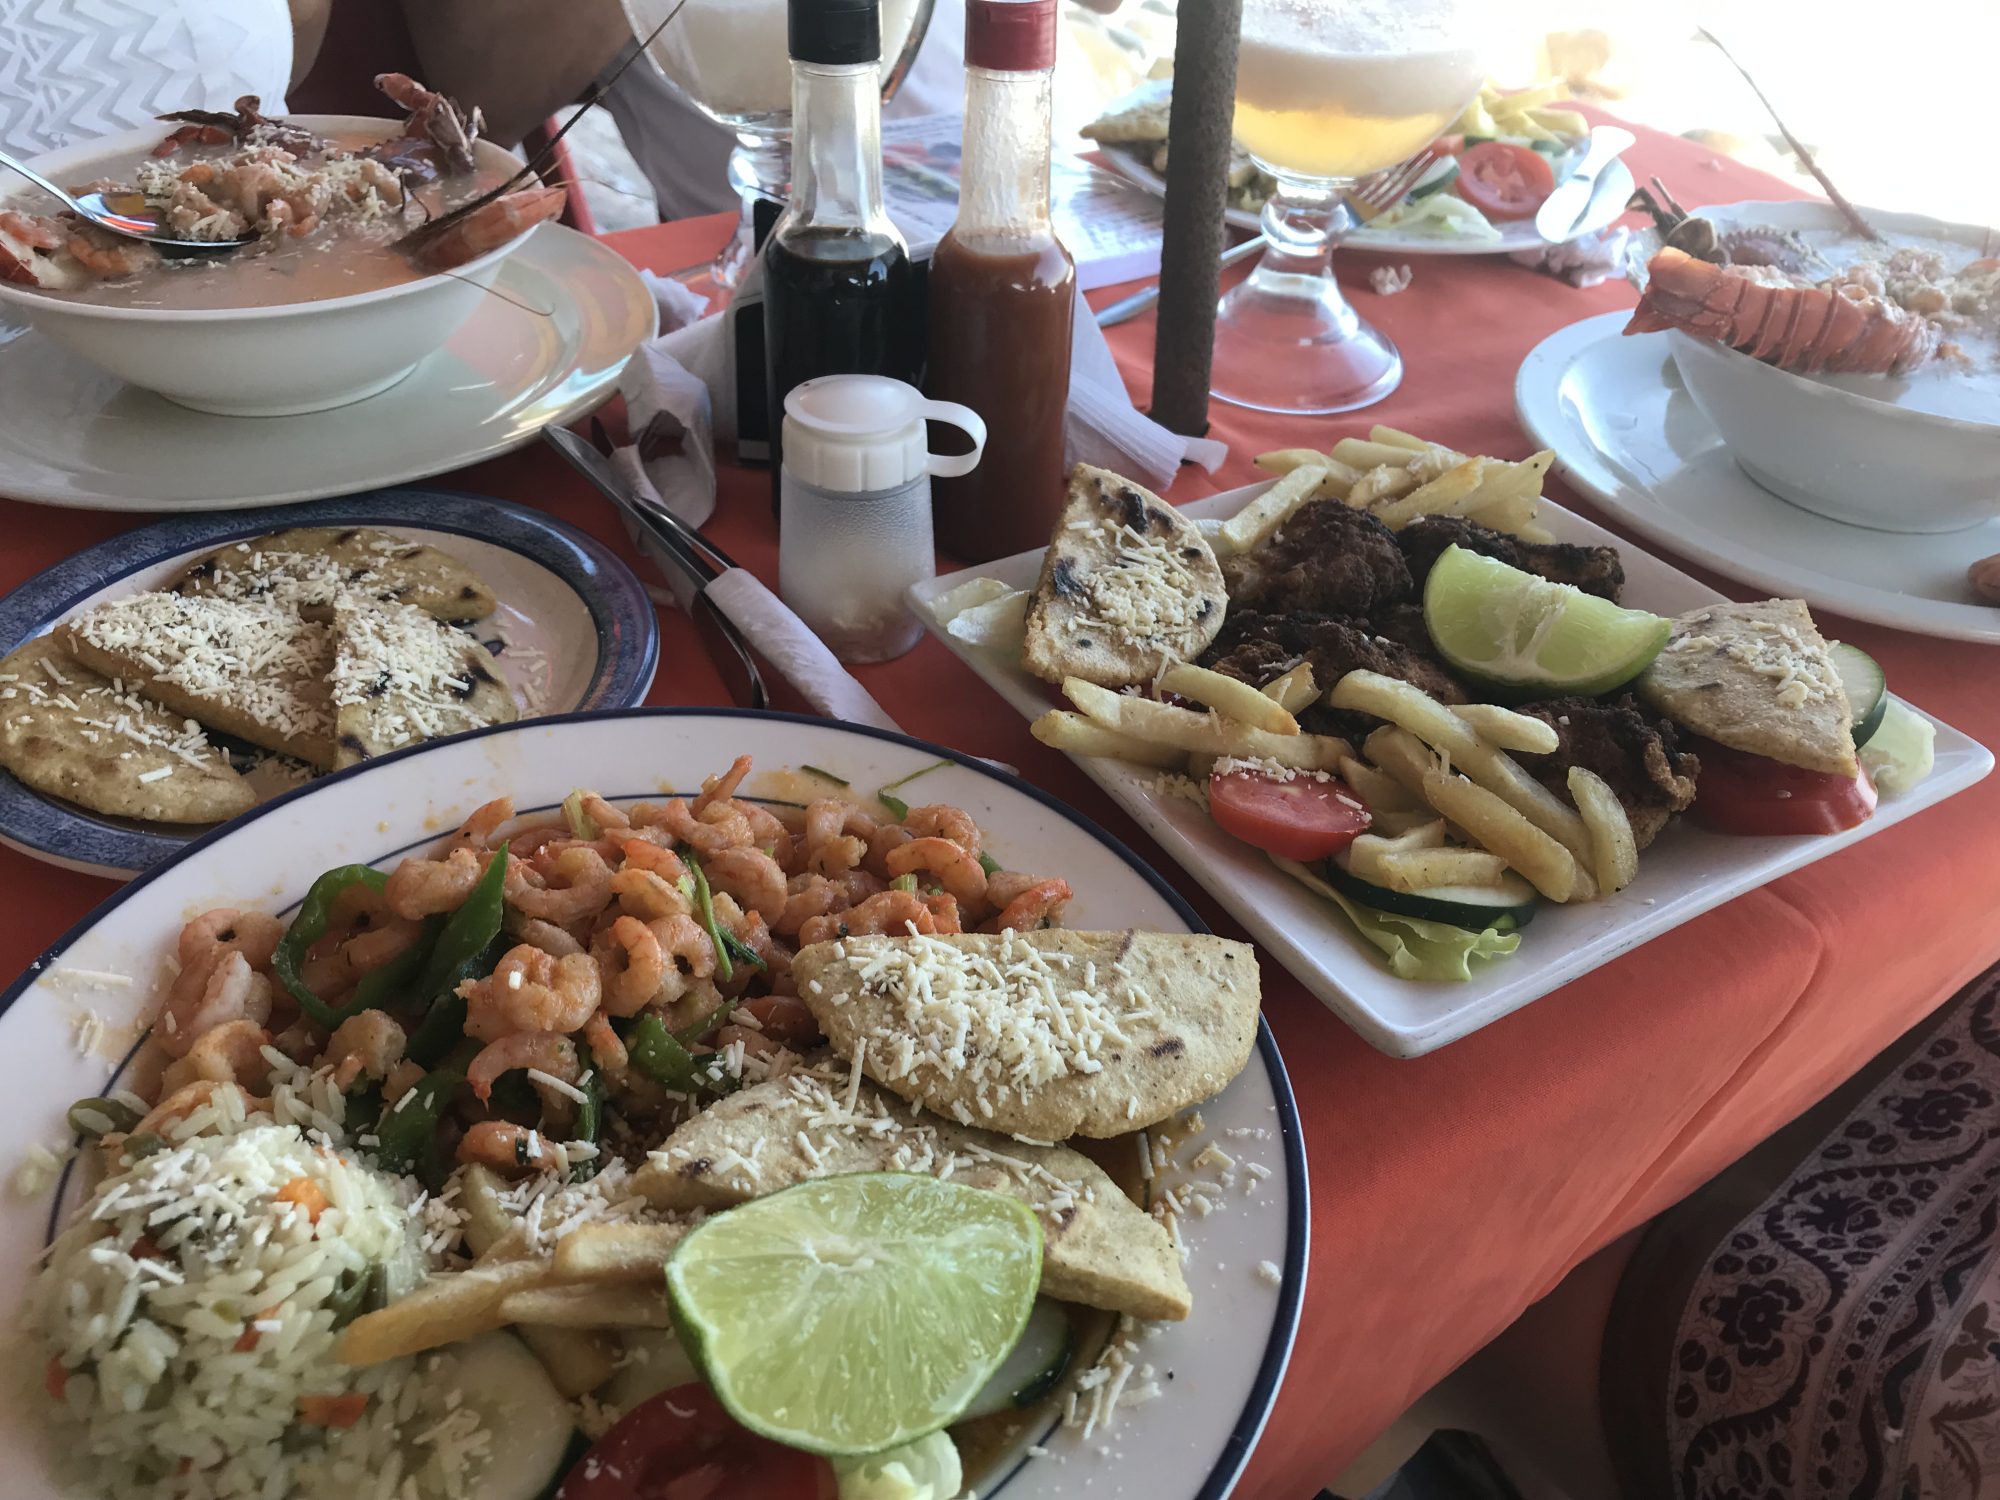 What is food like in El Salvador?